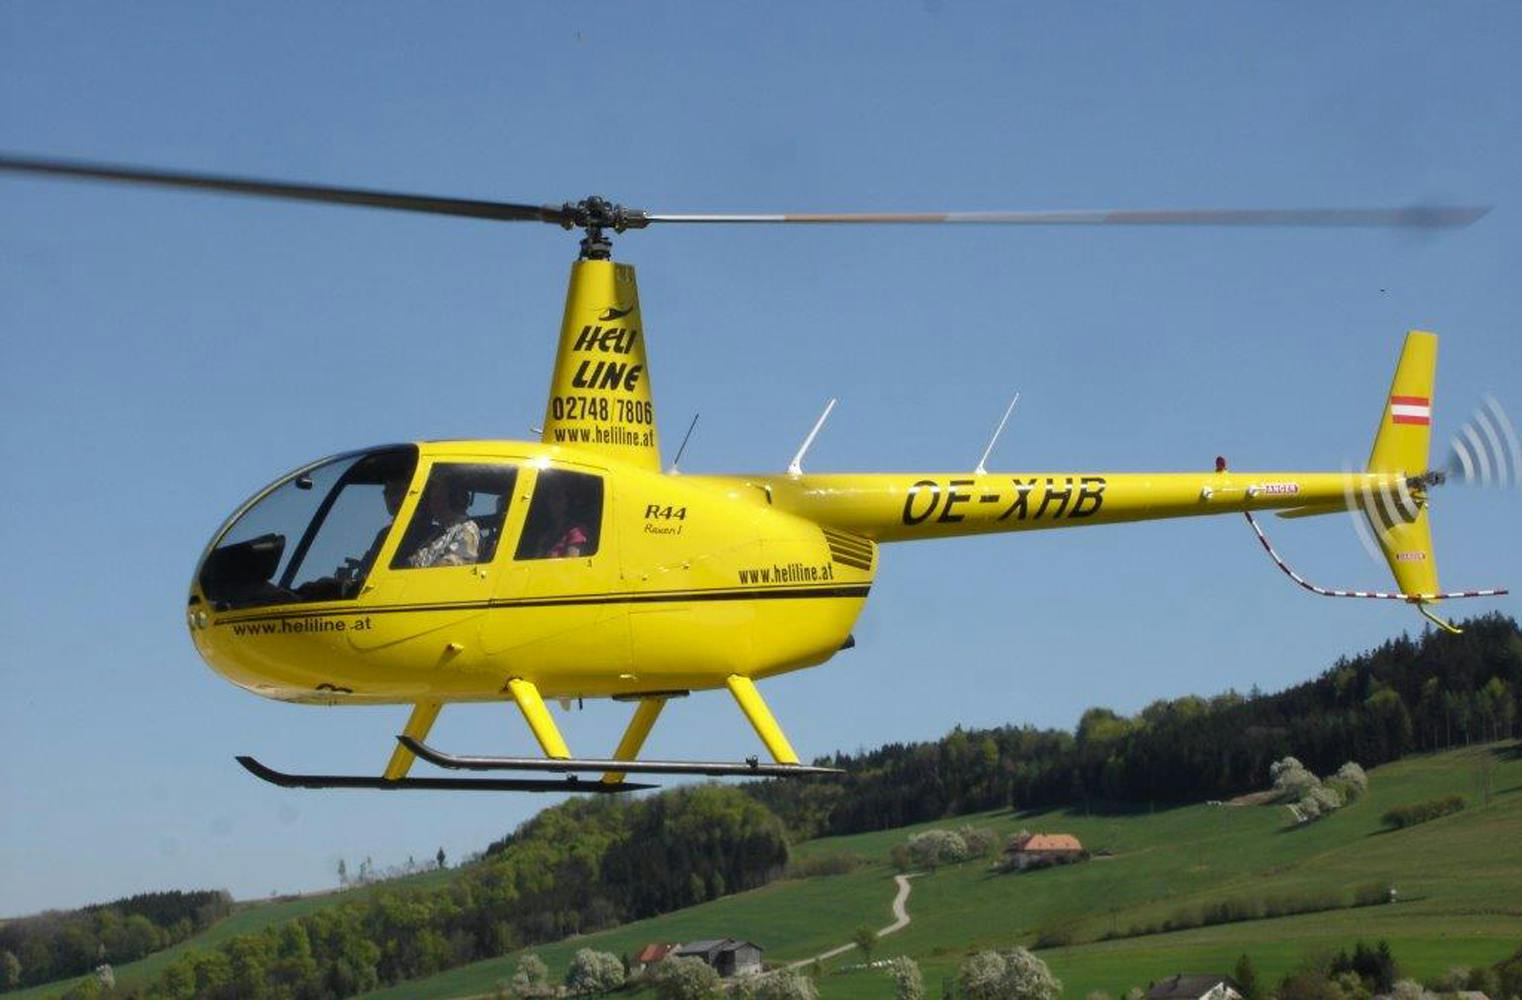 Genussflug zur Residenz Wachau | im Hubschrauber zum Dinner